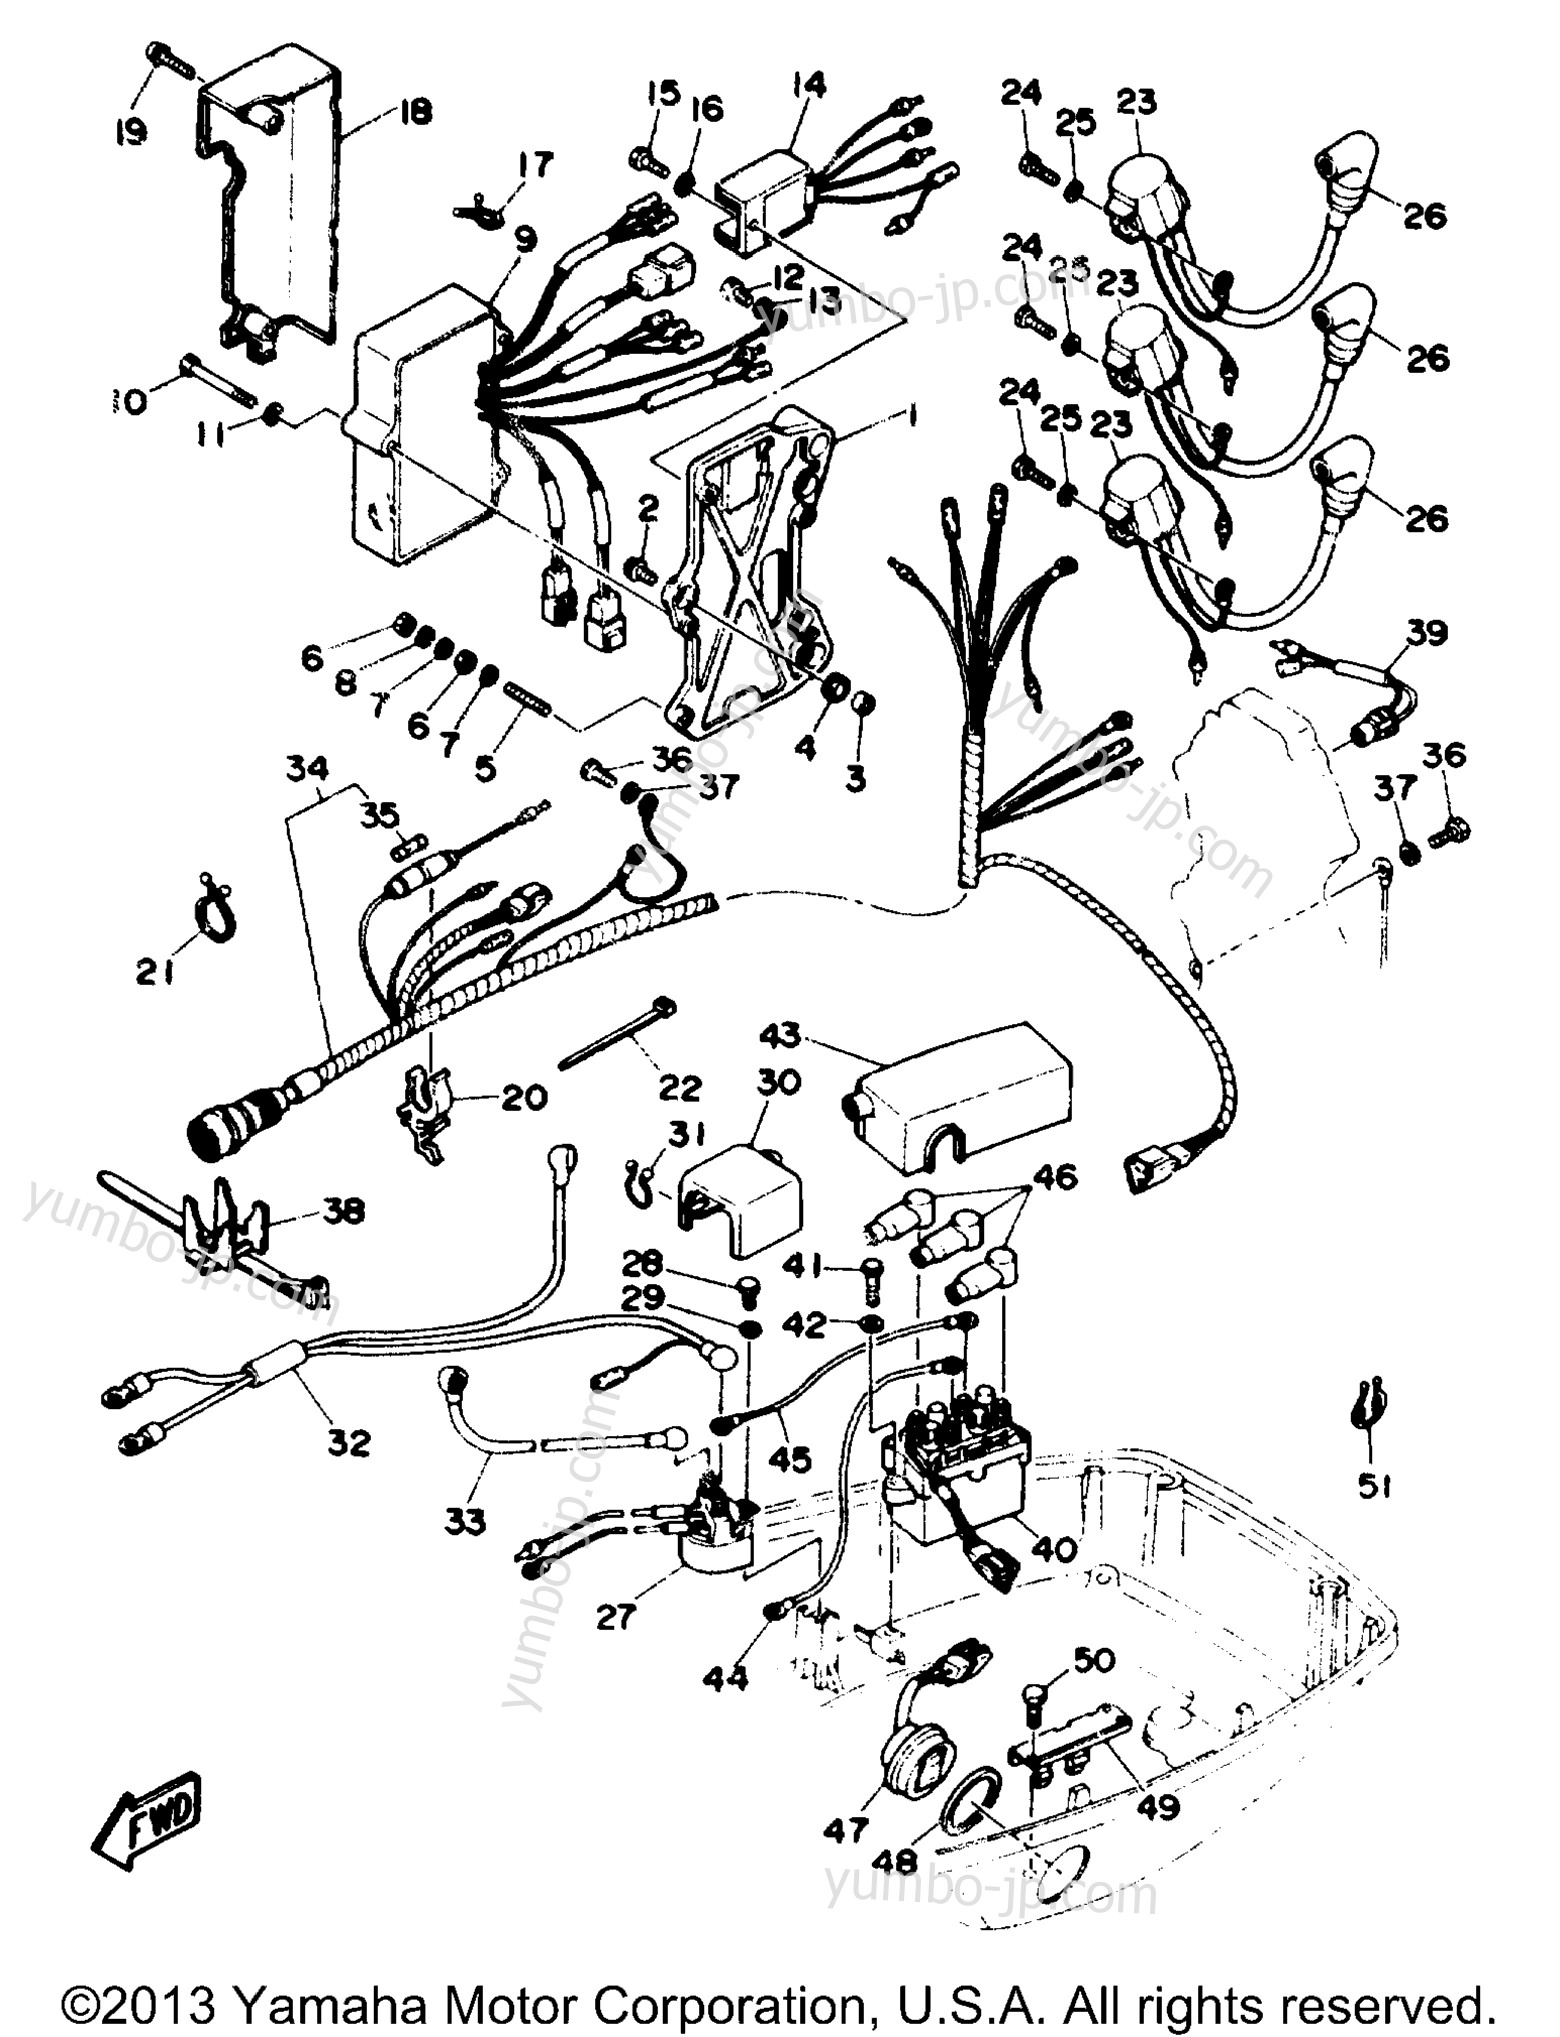 Electric Parts 1 для лодочных моторов YAMAHA P60TLHR 1993 г.